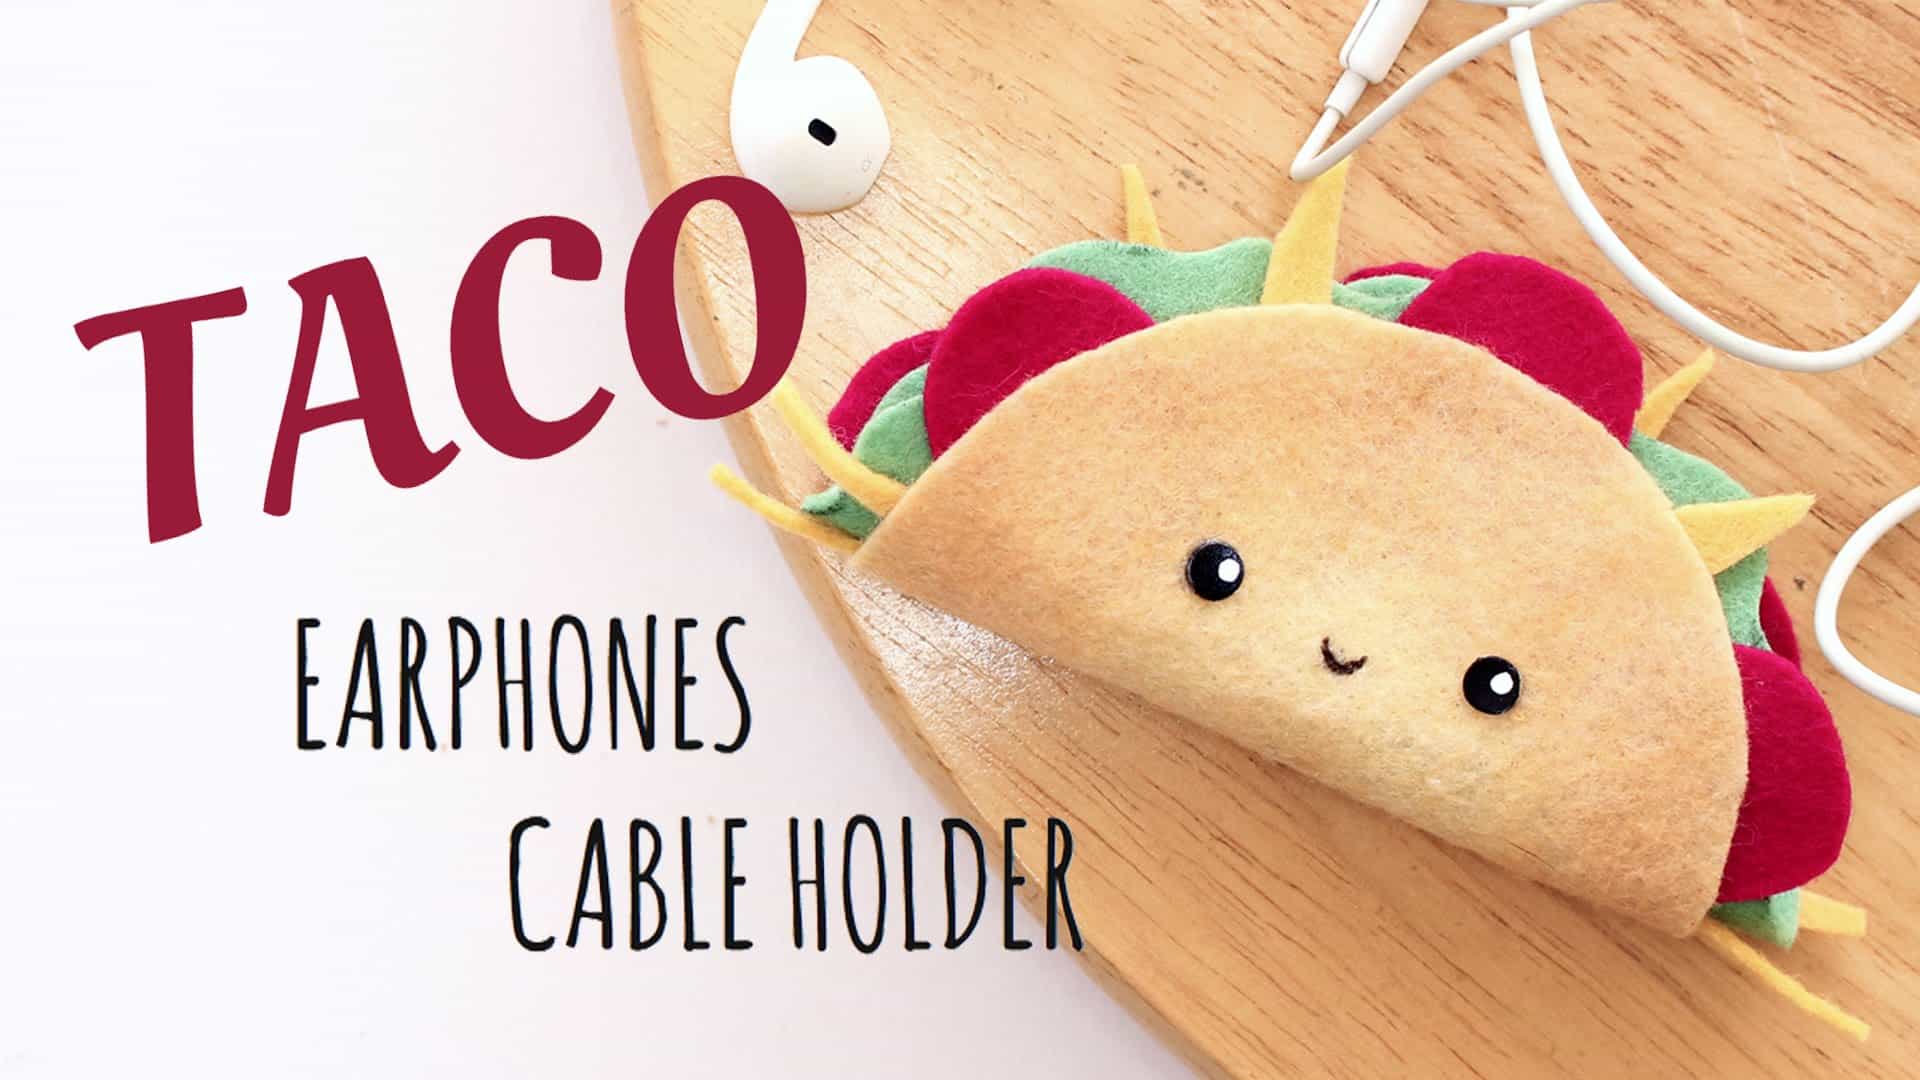 Taco earphones holder